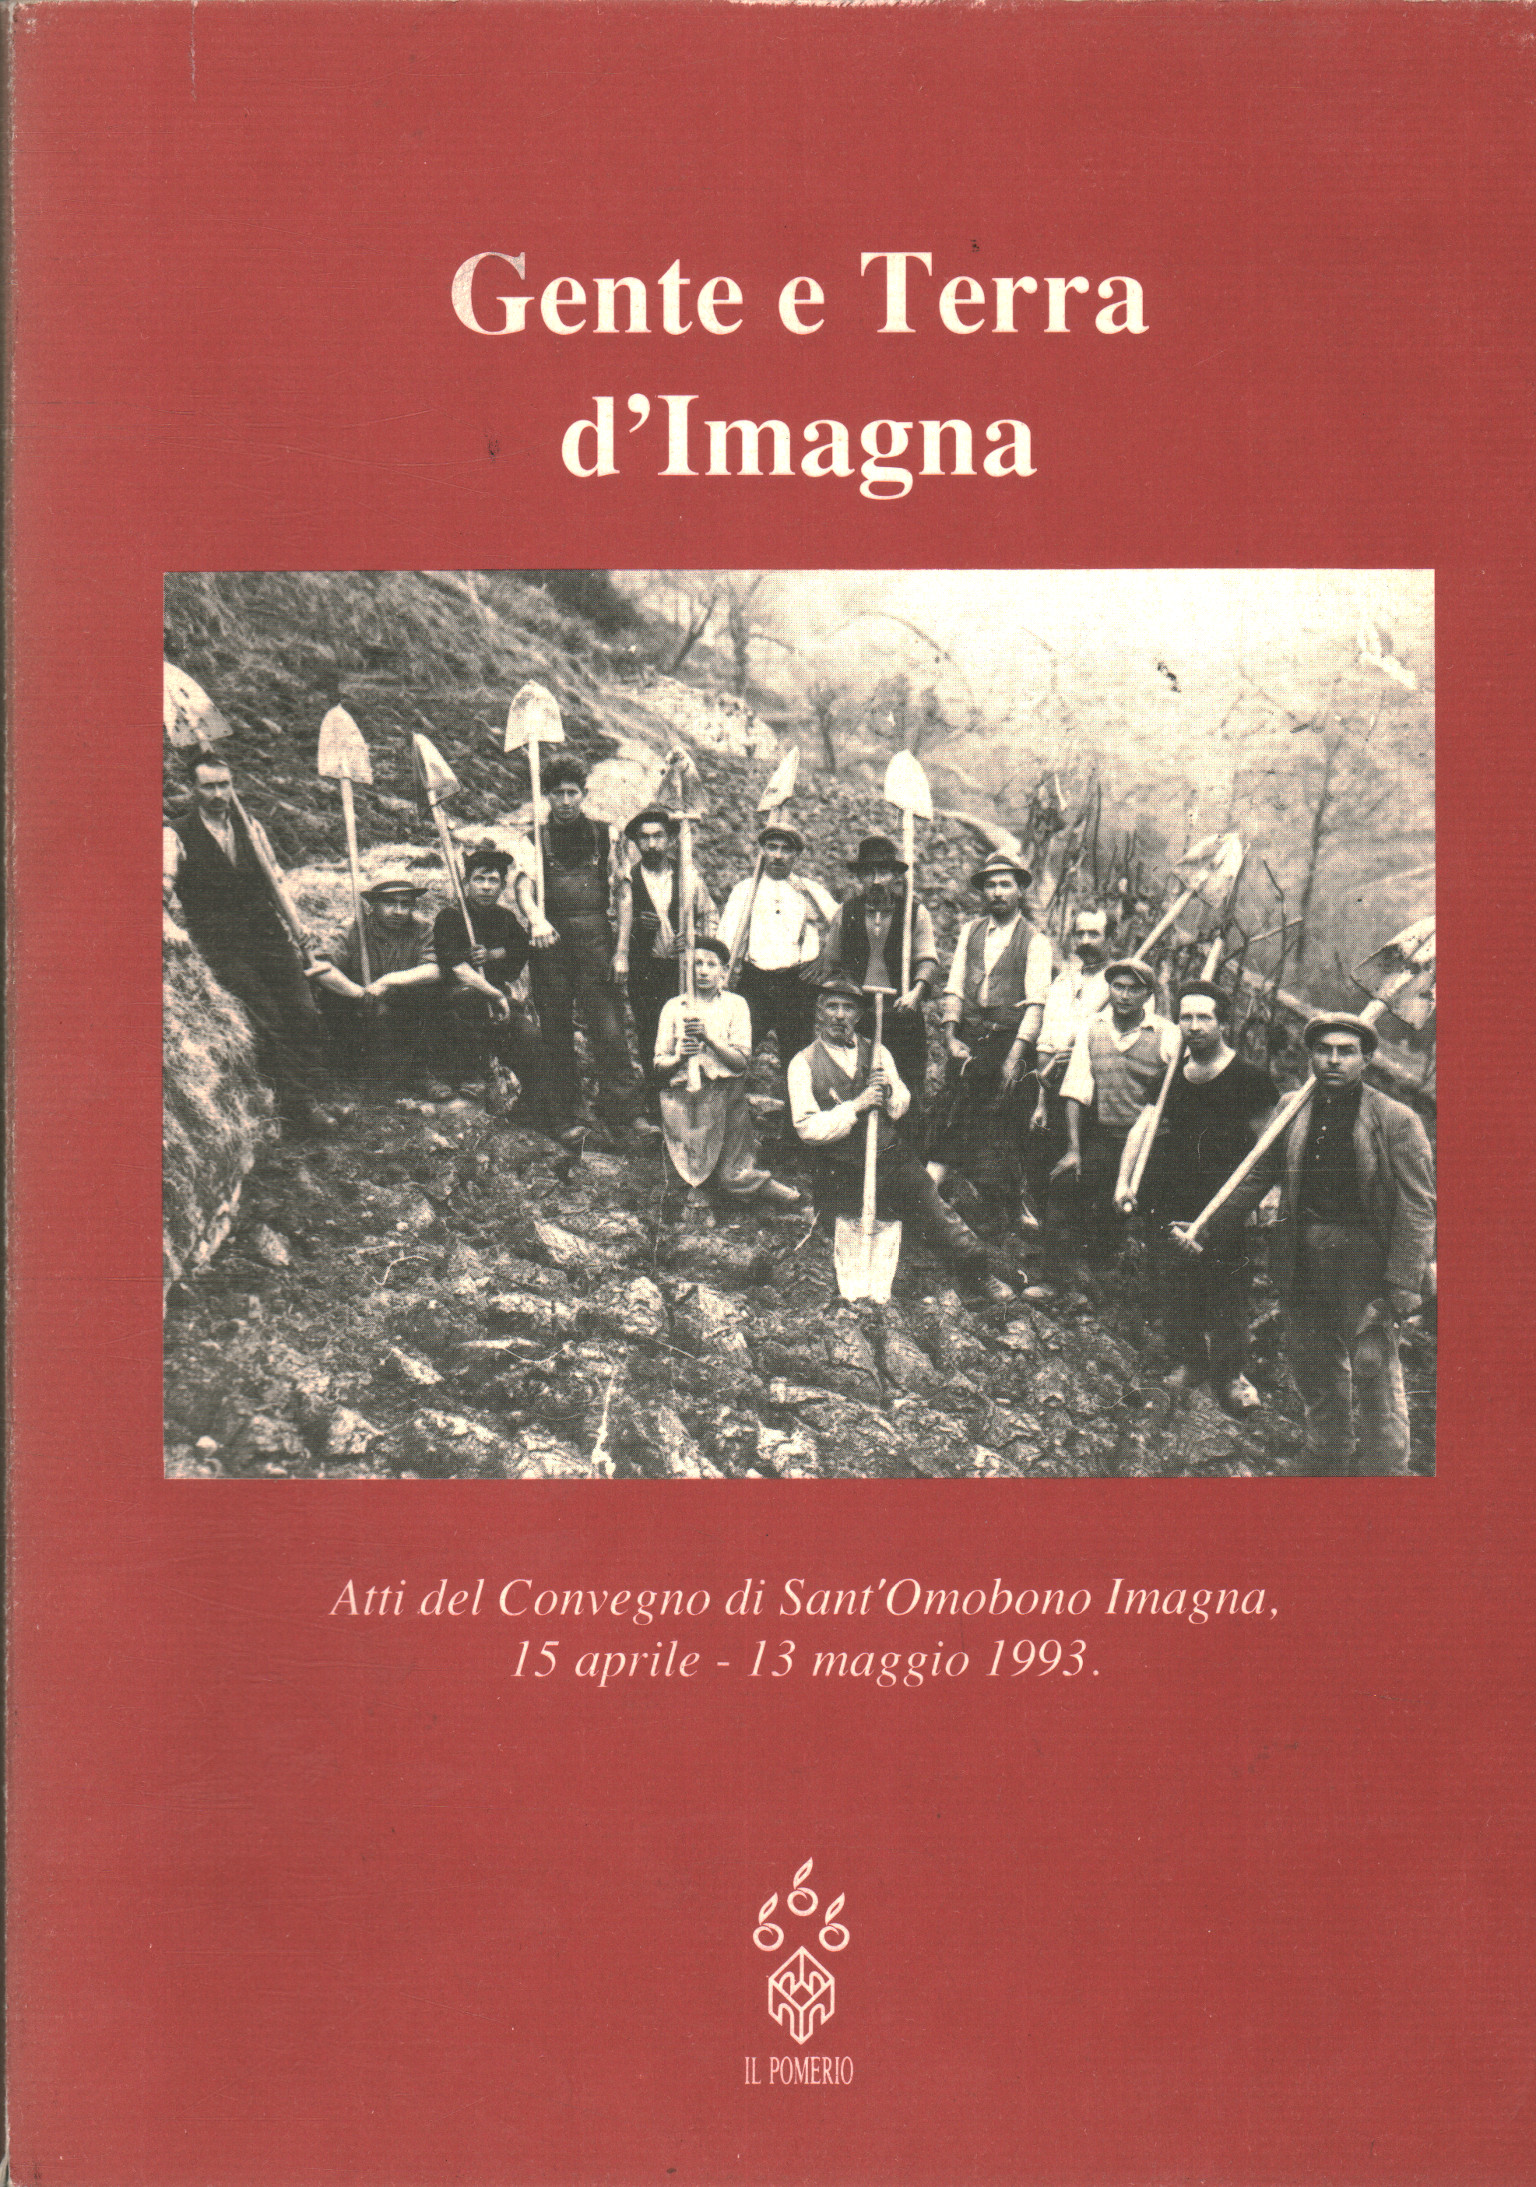 Pueblo y tierra de Imagna, Gianluca Sgalippa Marco Silva